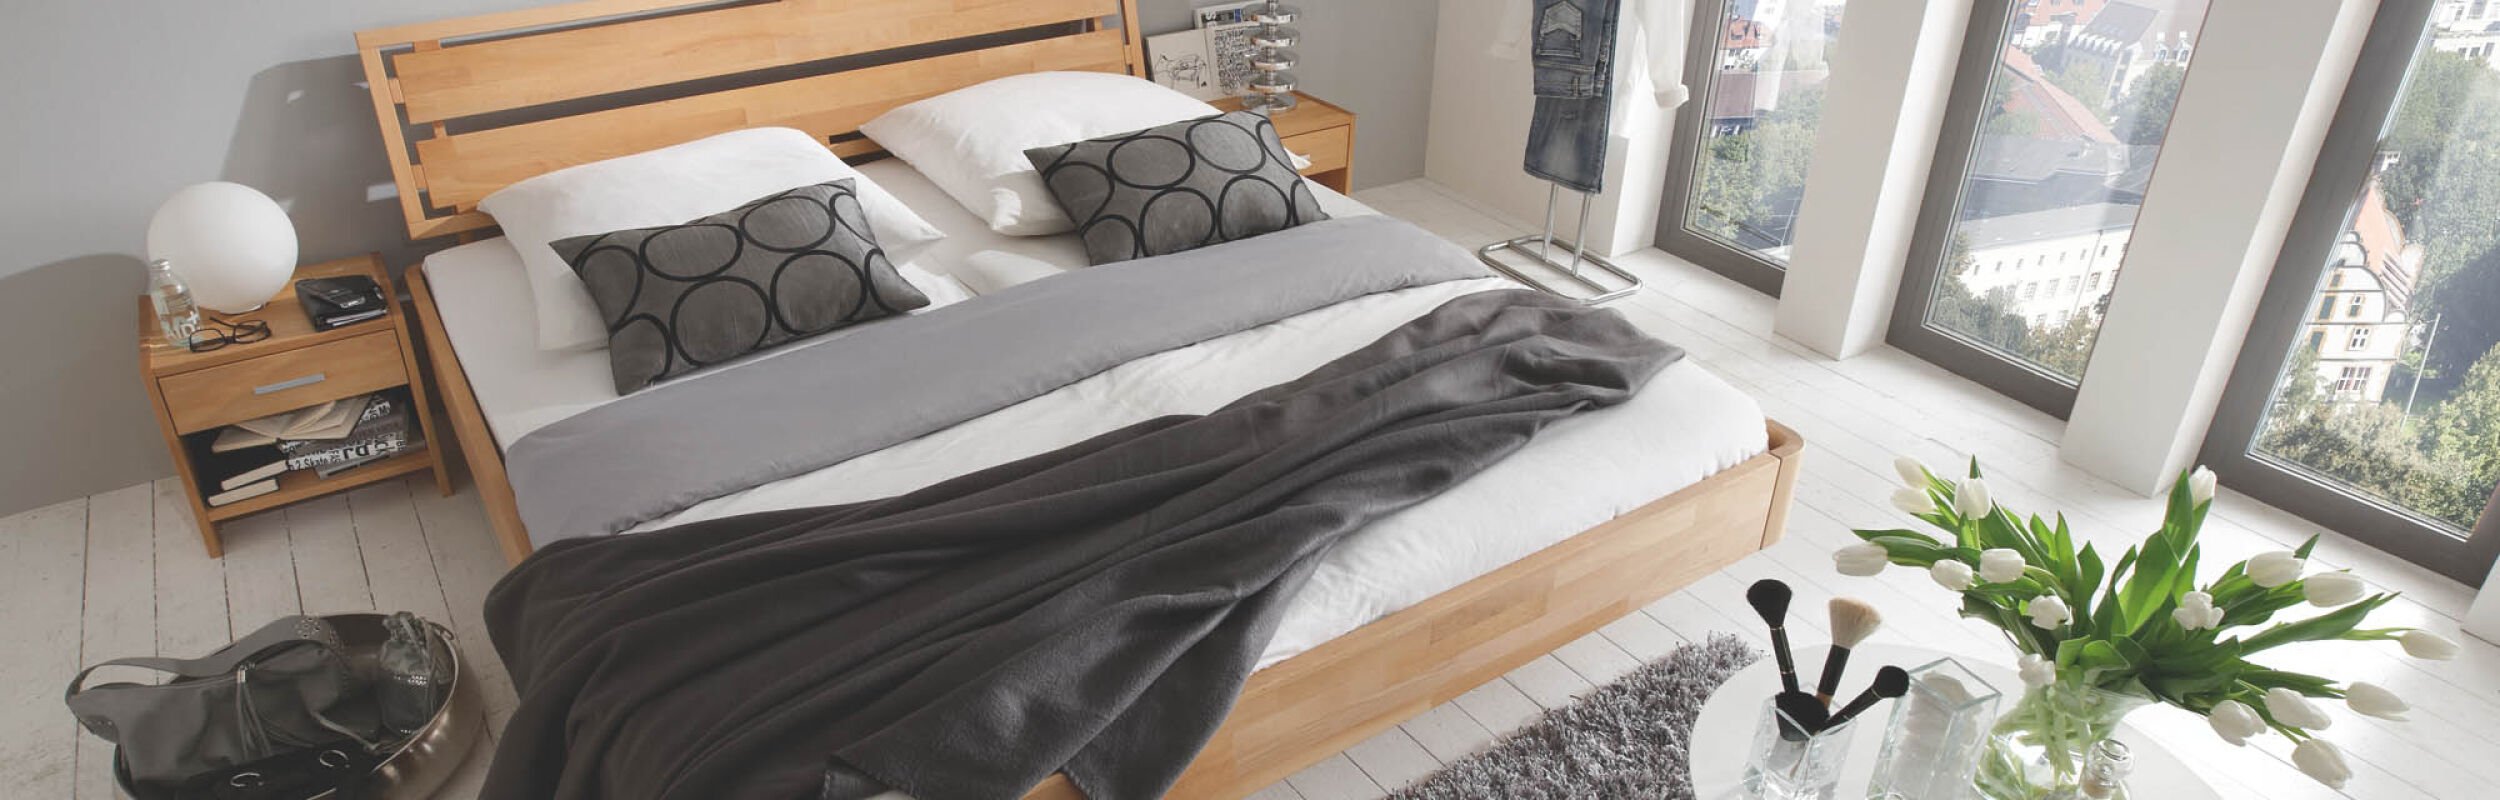 Ausstellungsstück Bett aus hellen Holz mit grauer Decke